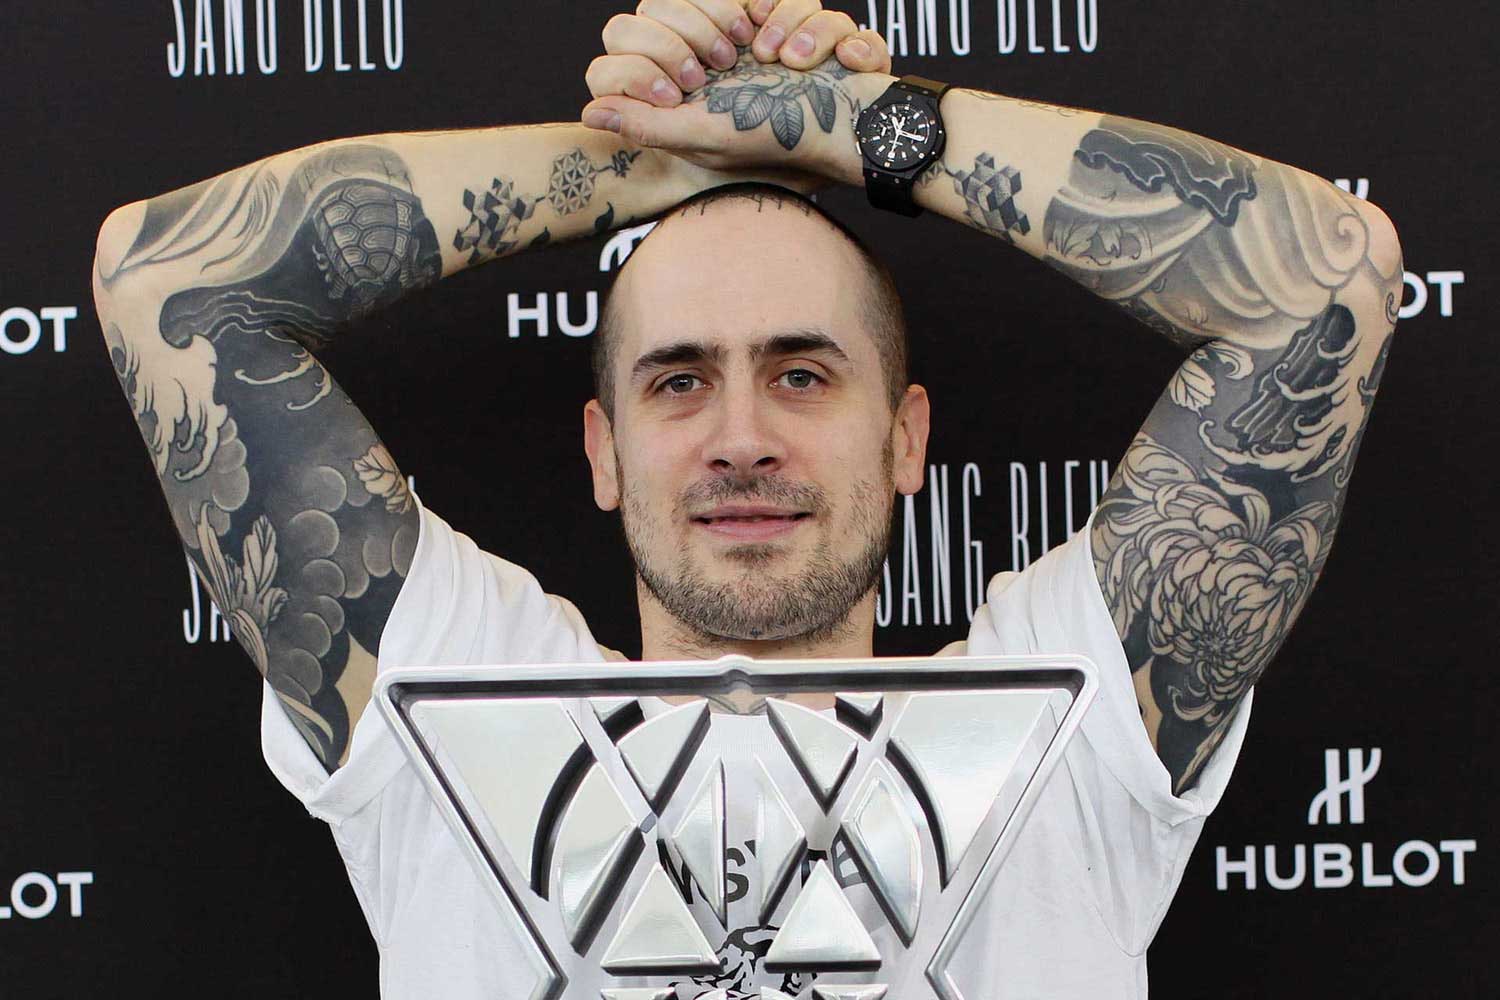 Swiss tattoo artist Maxime Büchi